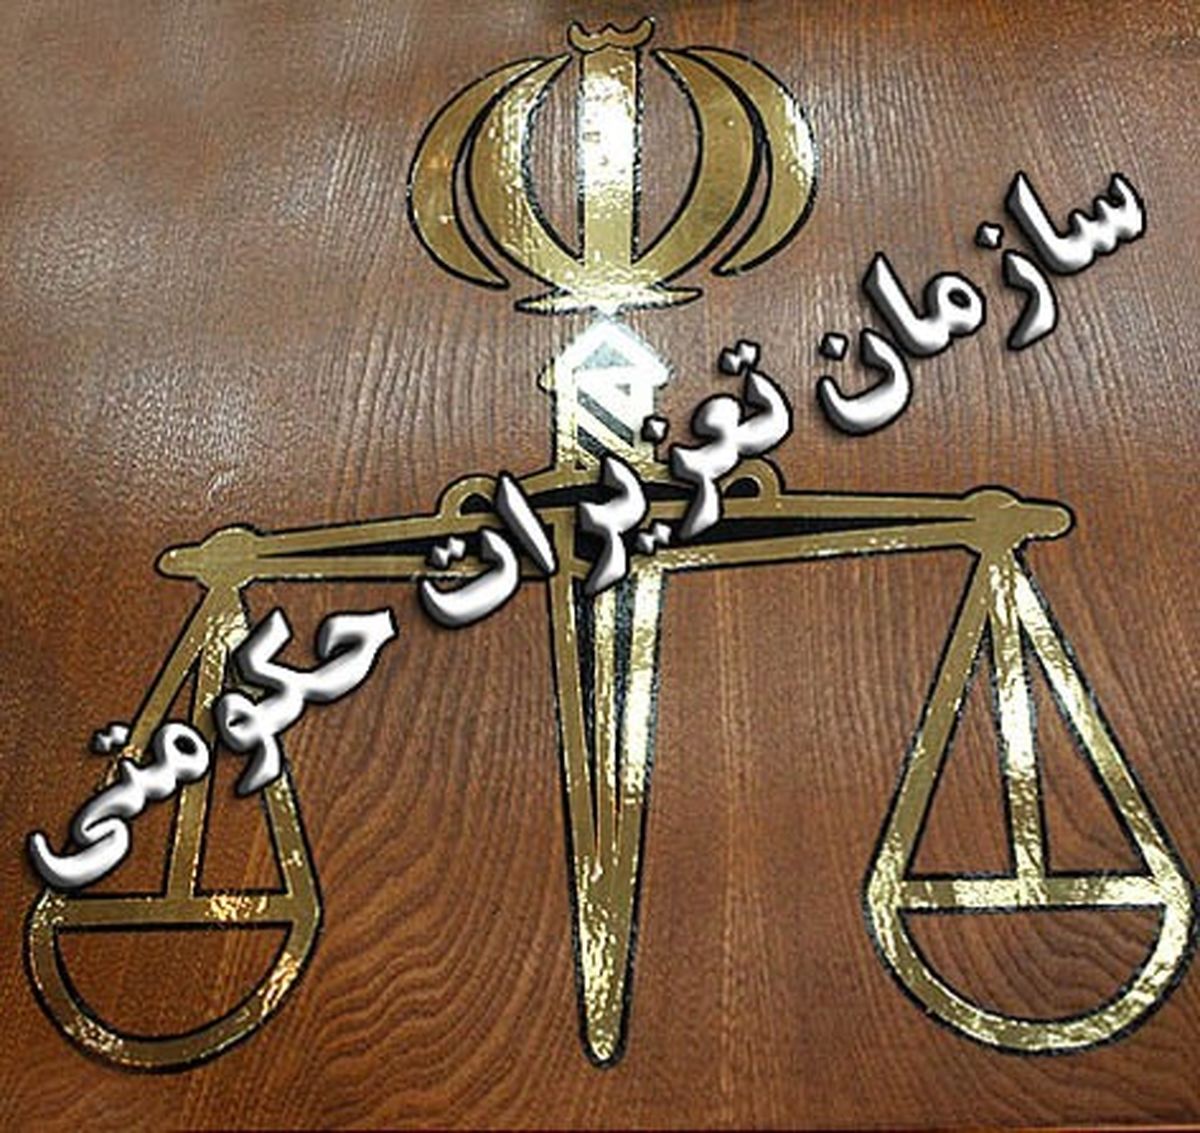 تعطیلی داروخانه متخلف با حکم تعزیرات حکومتی